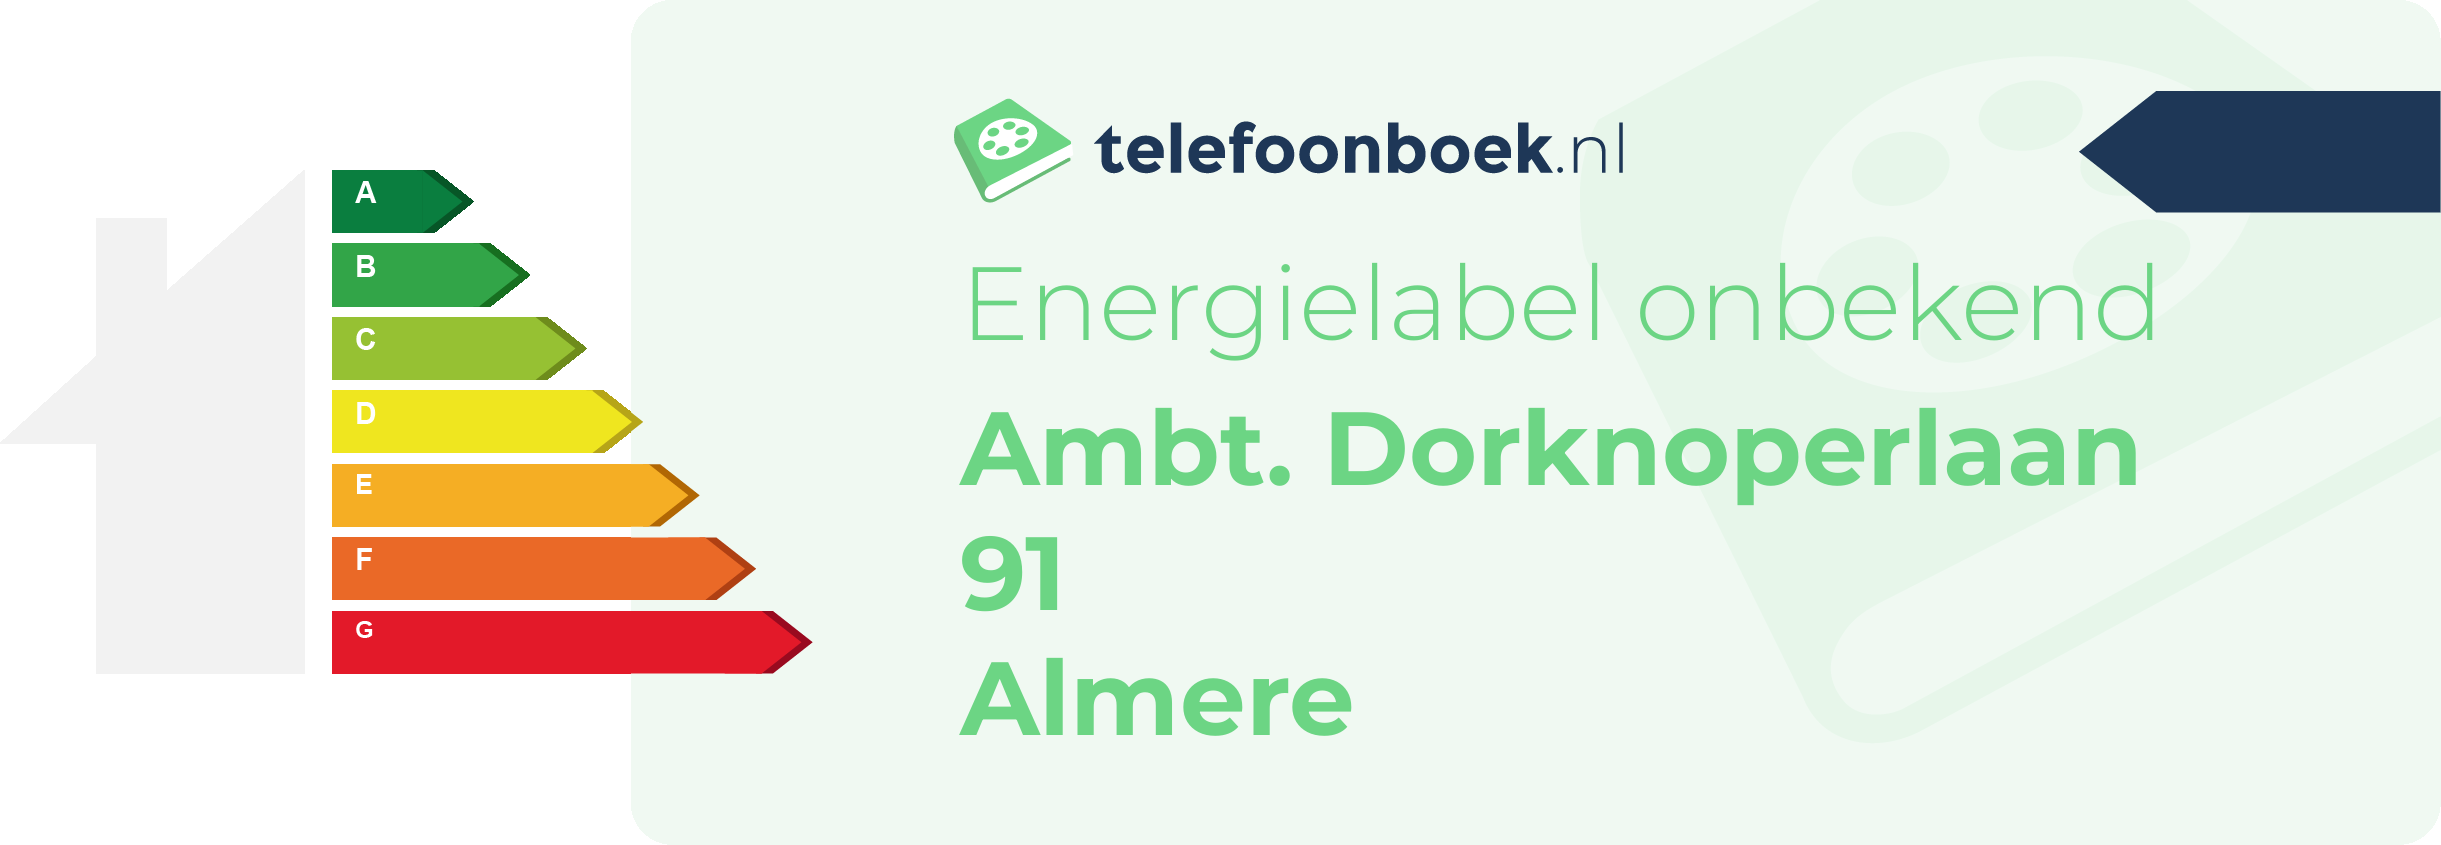 Energielabel Ambt. Dorknoperlaan 91 Almere